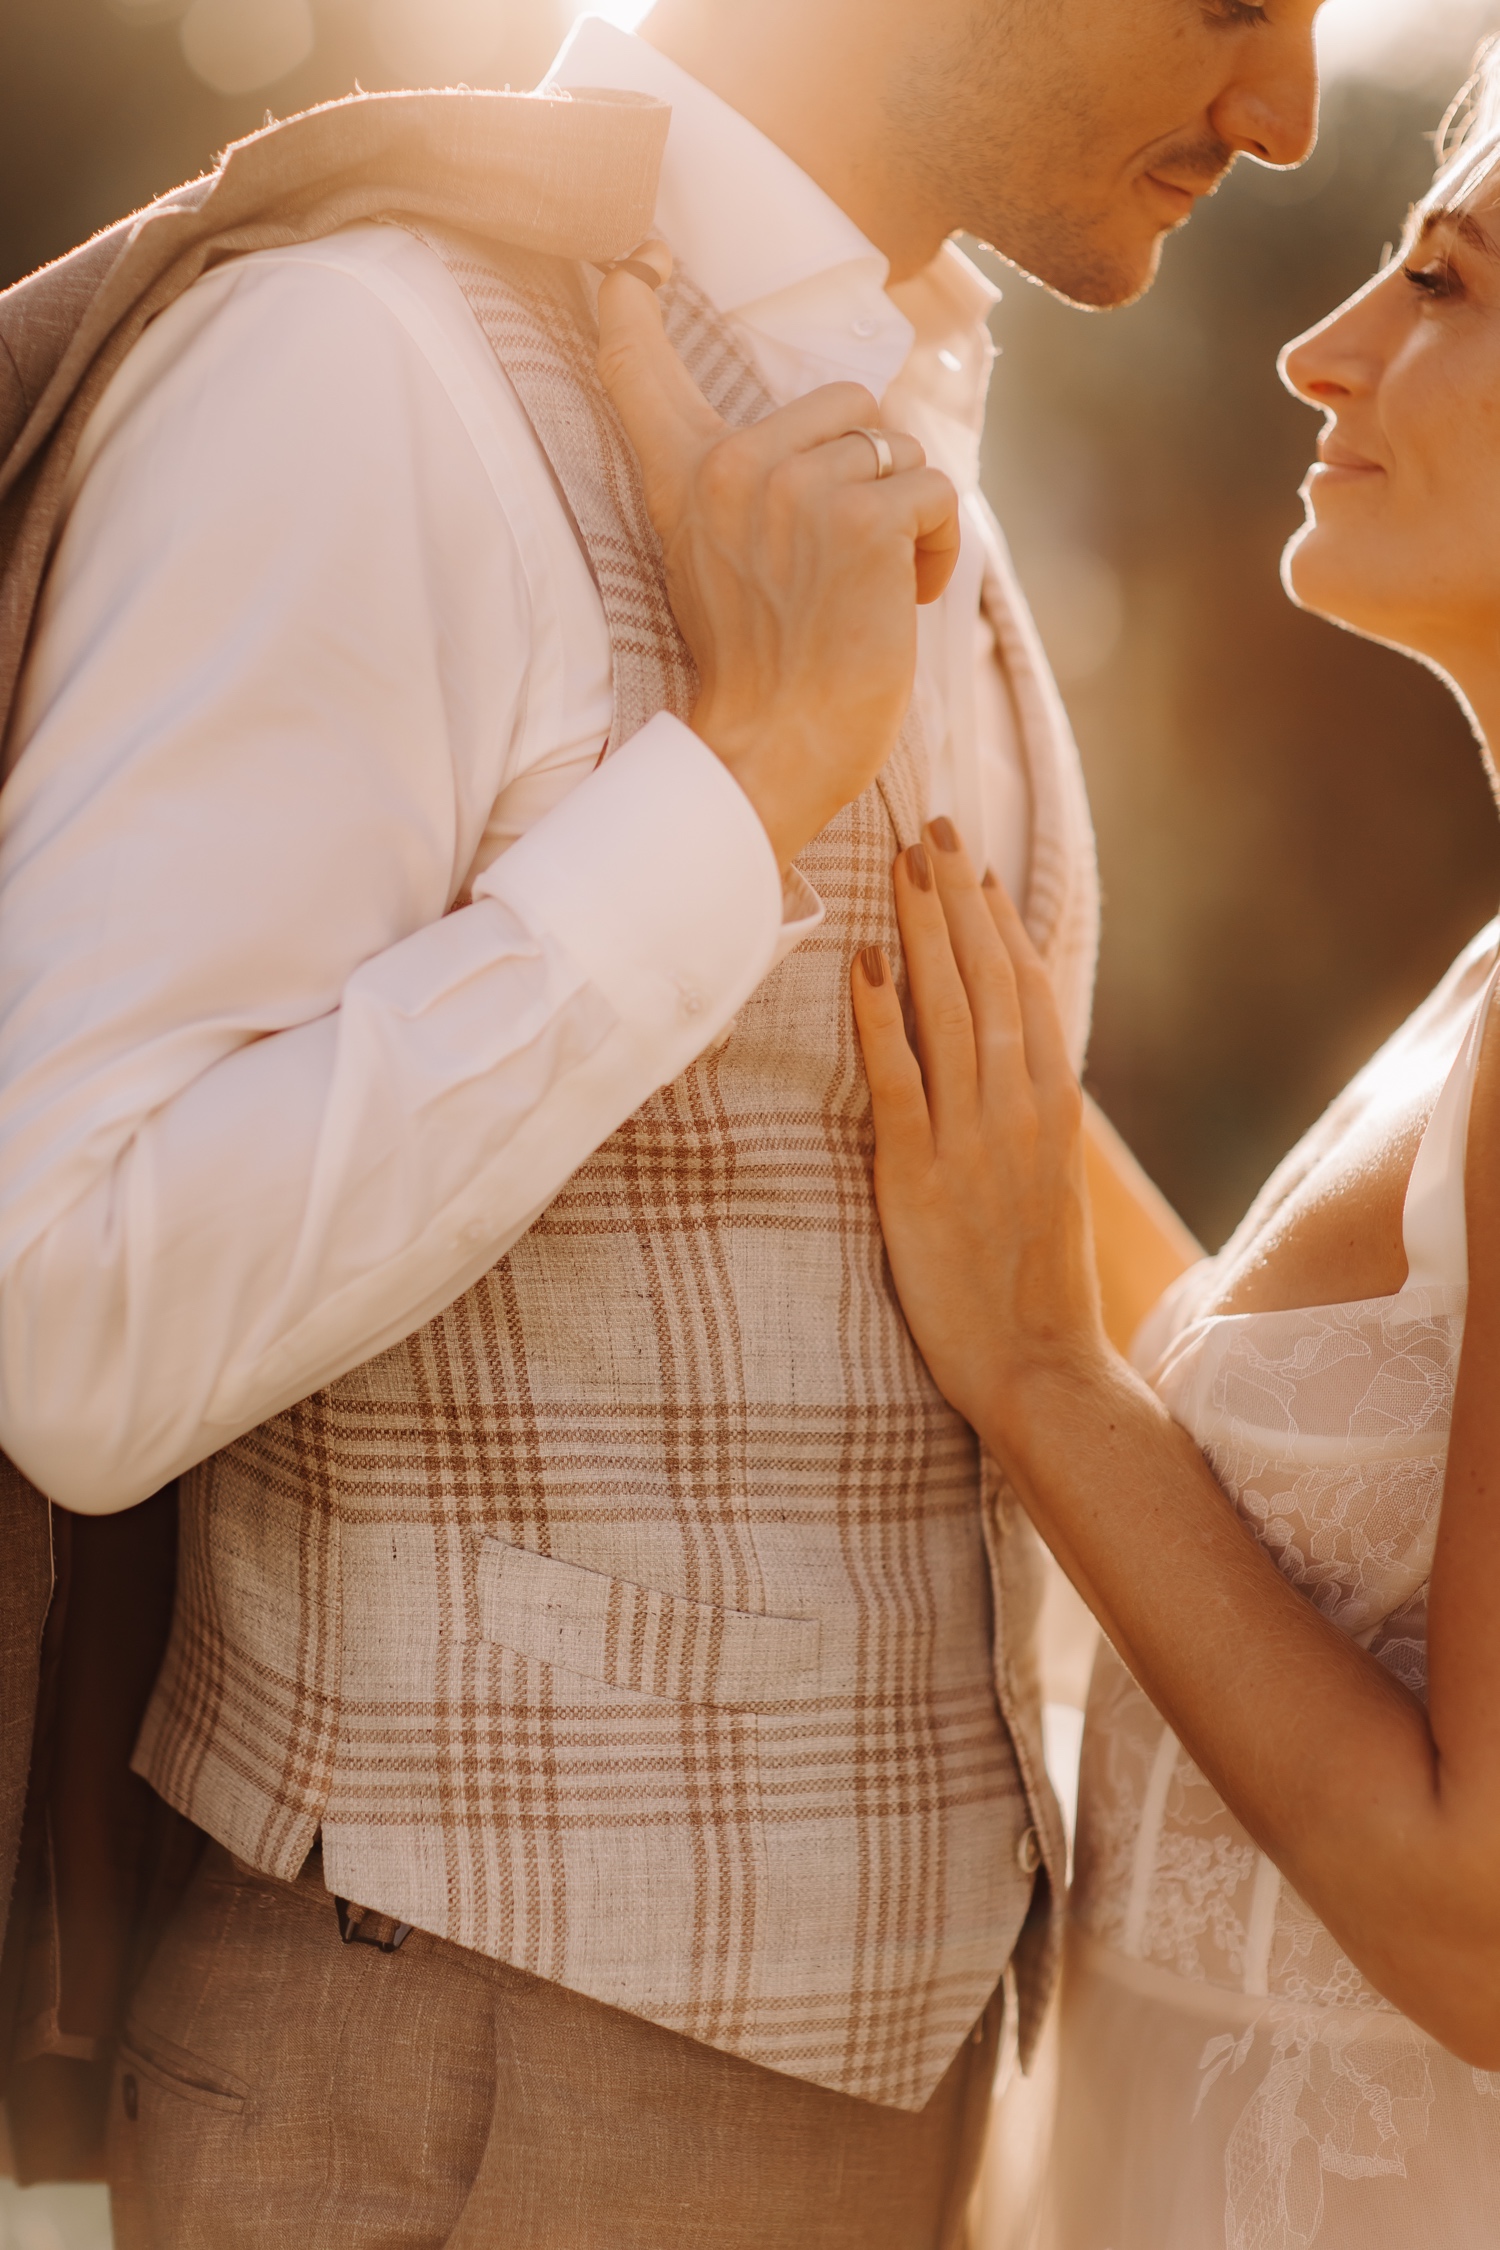 Huwelijksfotograaf buitenland - bruid legt haar hand op de borstkast van de bruidegom tijdens zonsondergang